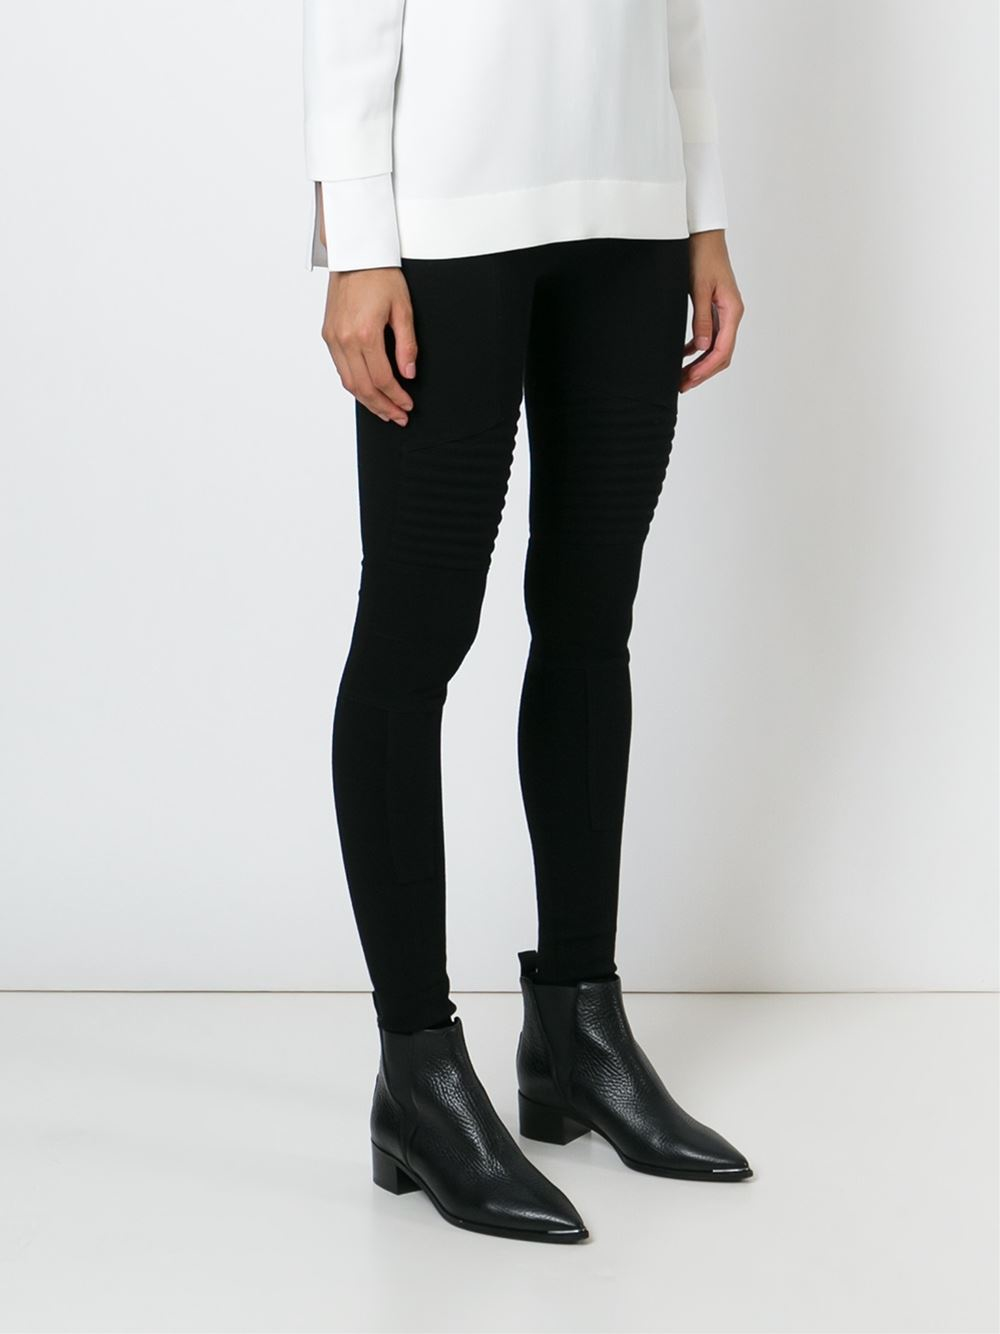 Givenchy - Biker Style Leggings - Women - Cotton/polyamide/spandex ...